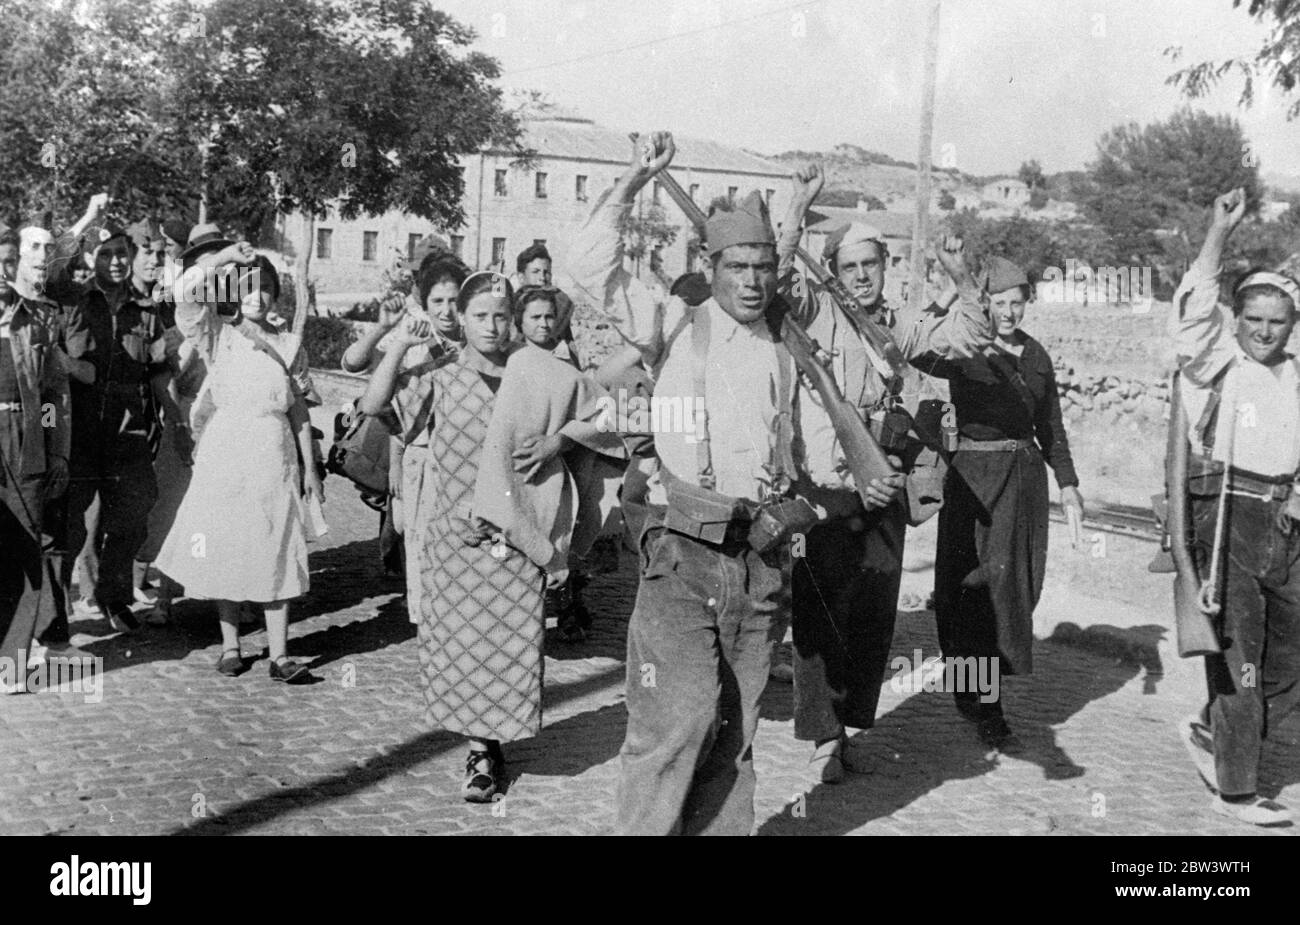 Solidarisch Marschieren Frauen Trotzig In Die Schlacht Im Guadarrama . Einige von ihnen in einfachen Haushaltsoveralls gekleidet, mehr Frauen sind ihre Manfolk in der Bekämpfung der Rebellen in der Guadarrama Bezirk von Spanien, wo eine unerbittliche Kriegsführung wird mit großer Härte für beide Seiten durchgeführt. Foto zeigt: Frauen, die die kommunistische geballte Faust grüßen, als sie marschieren, um gegen die Kräfte von General Emilio Mola zu kämpfen, Rebell comander in Alto de Leon. August 1936, 10 Stockfoto